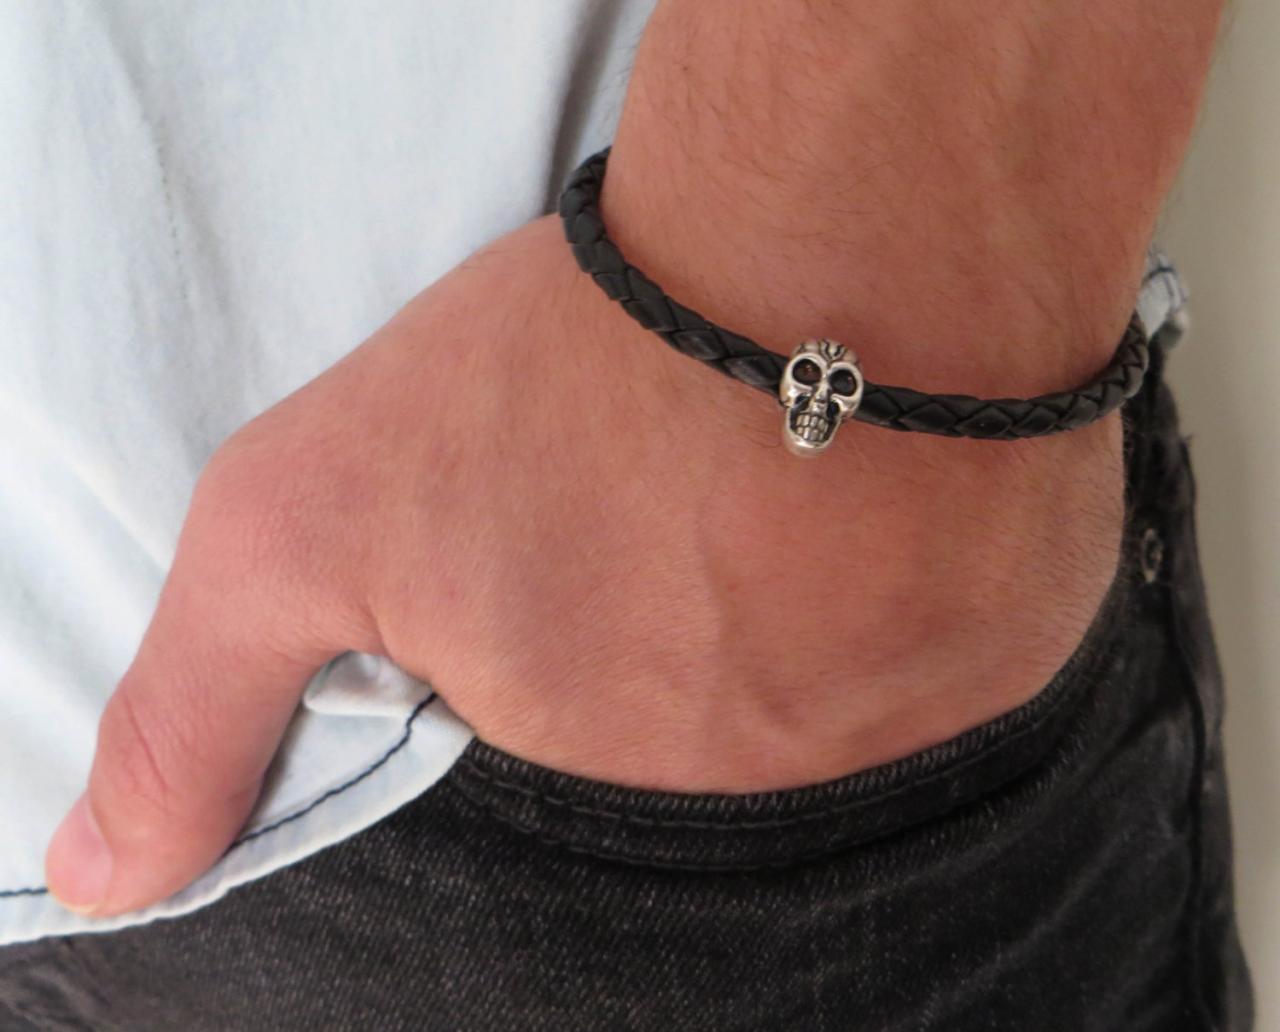 Men's Bracelet - Men's Skull Bracelet - Men's Cuff Bracelet - Men's Leather Bracelet - Men's Jewelry